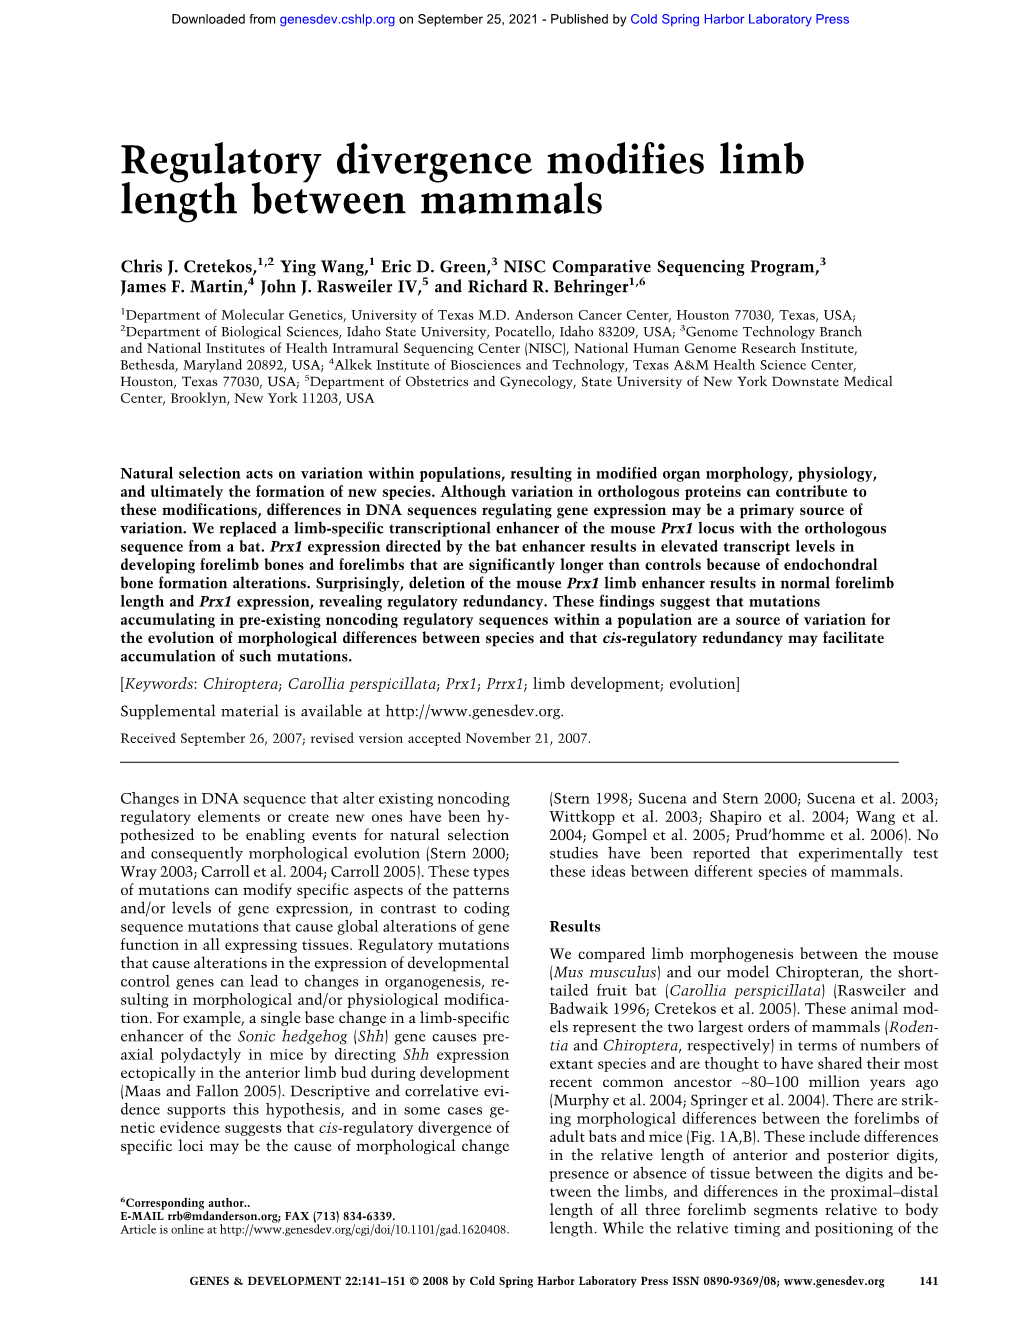 Regulatory Divergence Modifies Limb Length Between Mammals